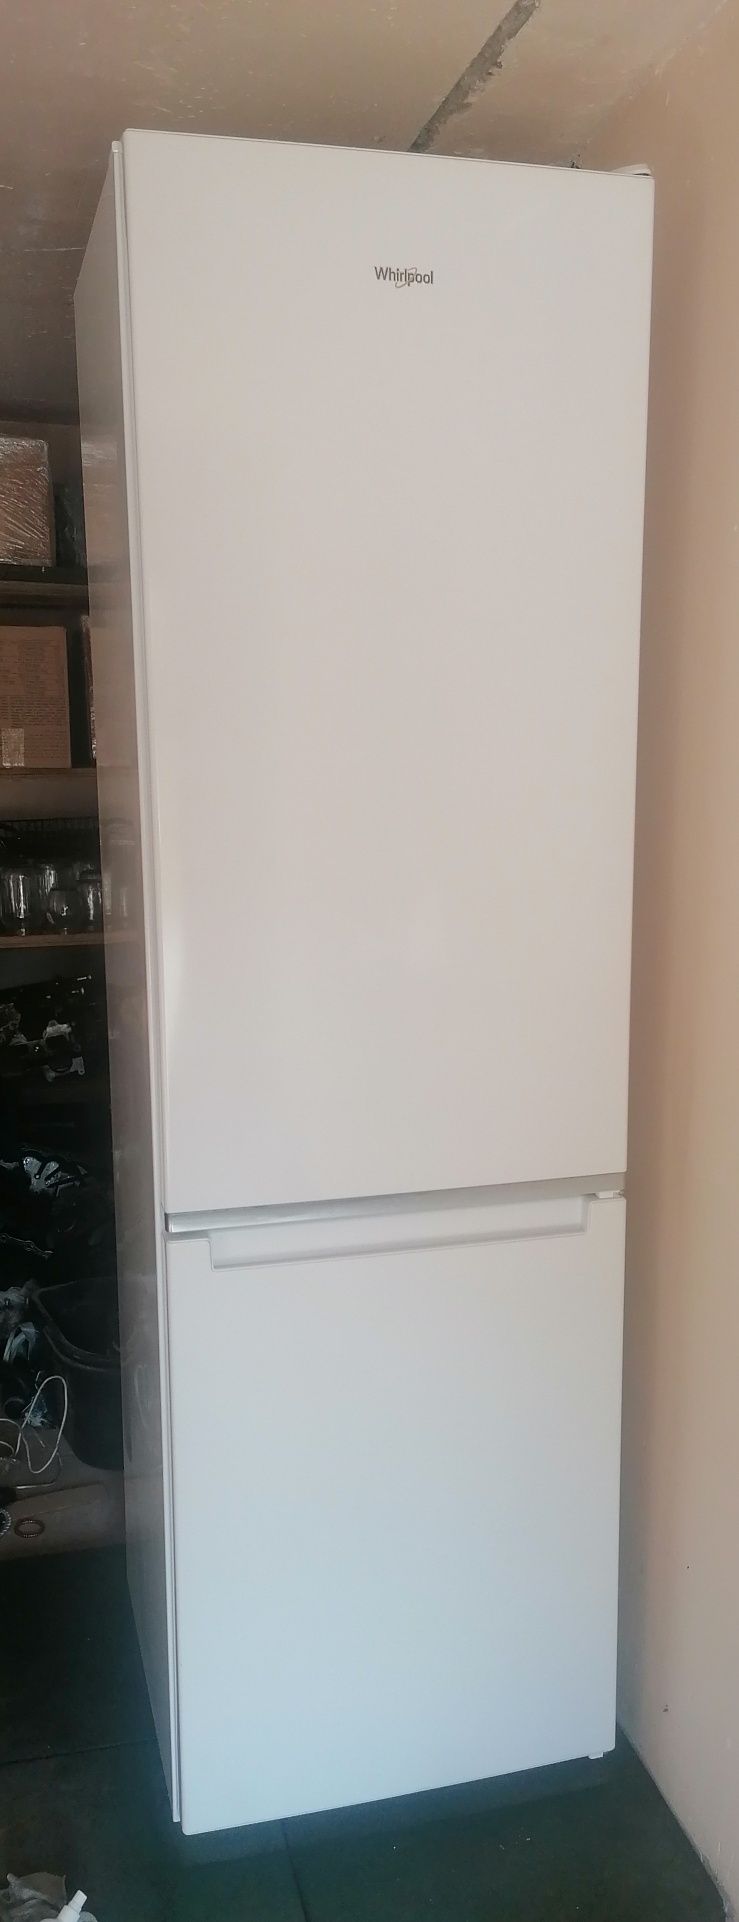 Холодильник Whirlpool w9 921cw